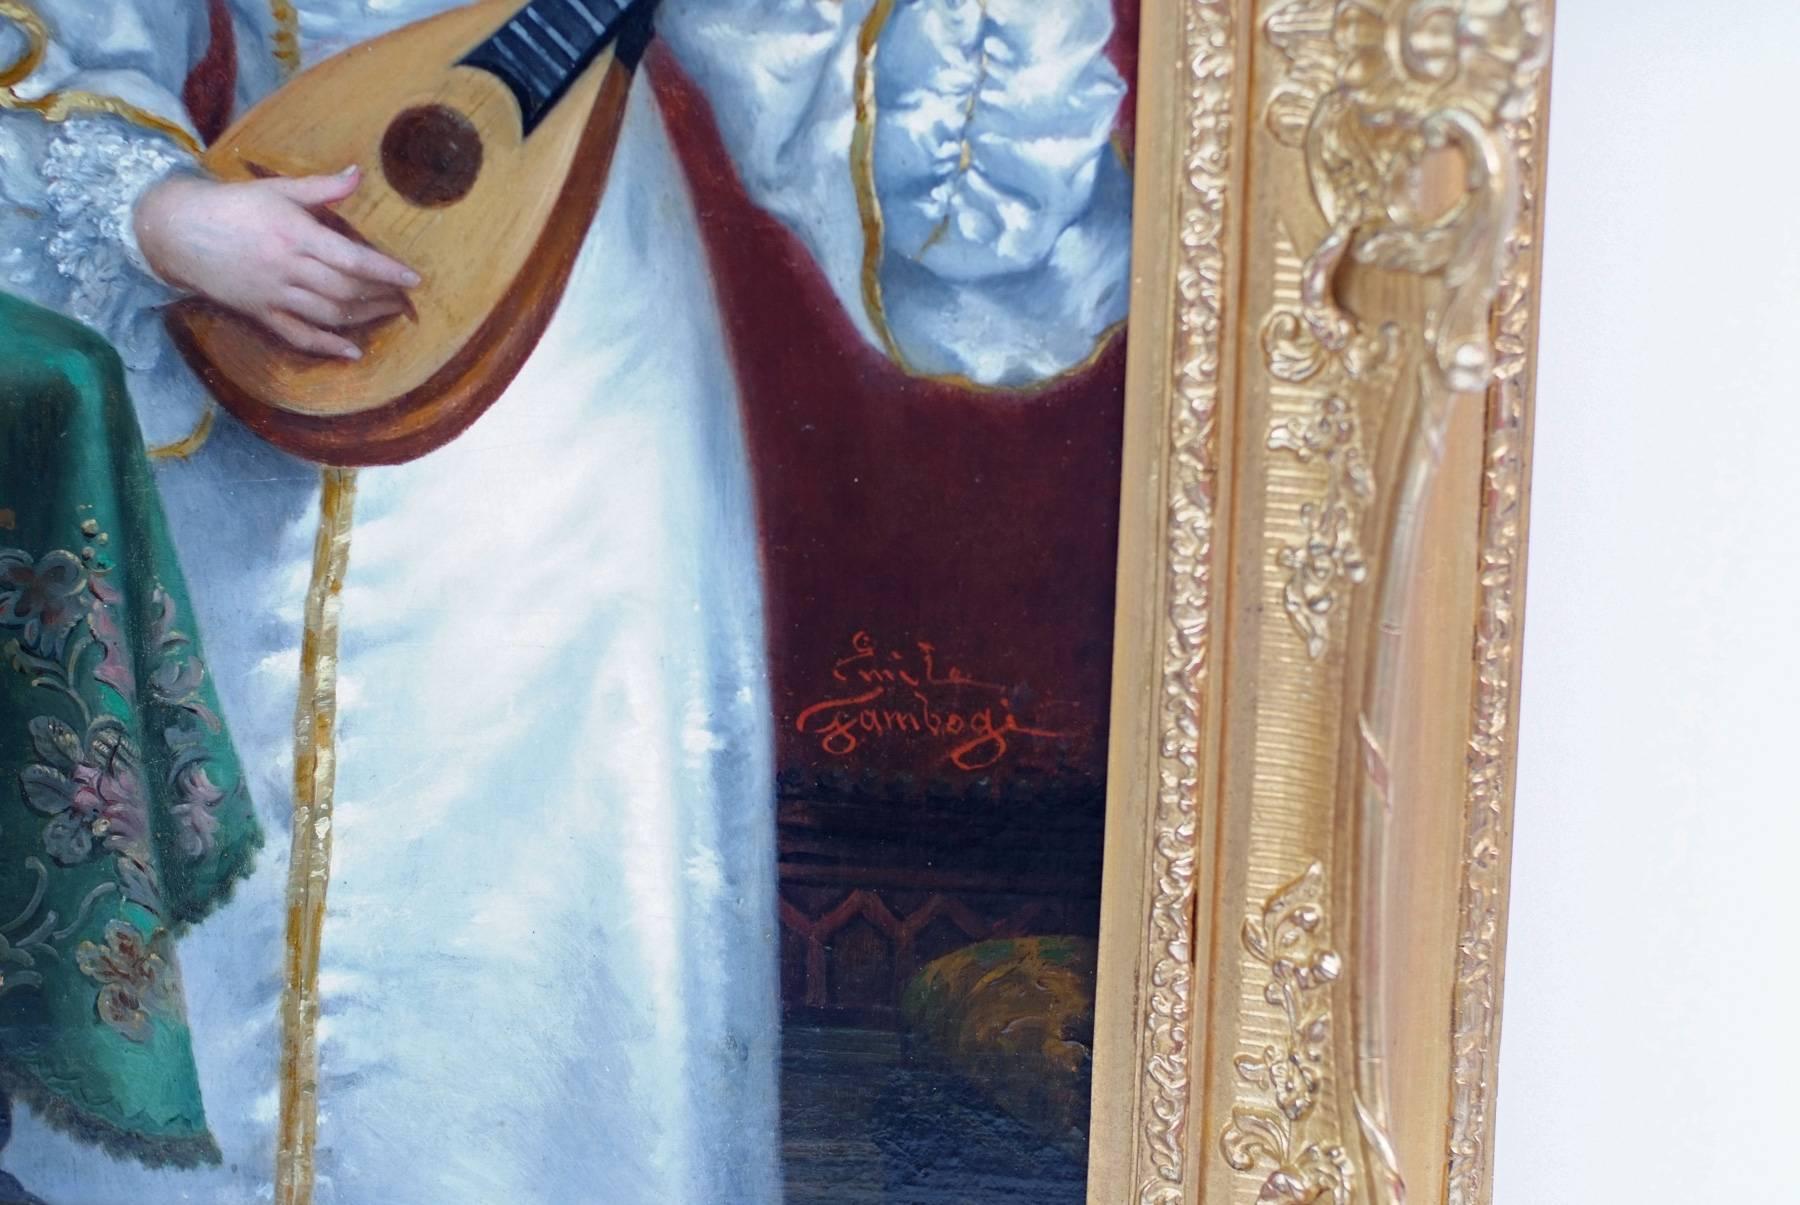 GAMBOGI Emile (1819-1895)
Dame spielt Mandoline
Öl auf Holzplatte  unterschrieben rechts unten
Alter Originalrahmen mit Blattvergoldung
Maße der Holzplatte: 56 x 34 cm
Abmessung Rahmen : 72 X 51 cm
Echtheitszertifikat 

GAMBOGI Emile